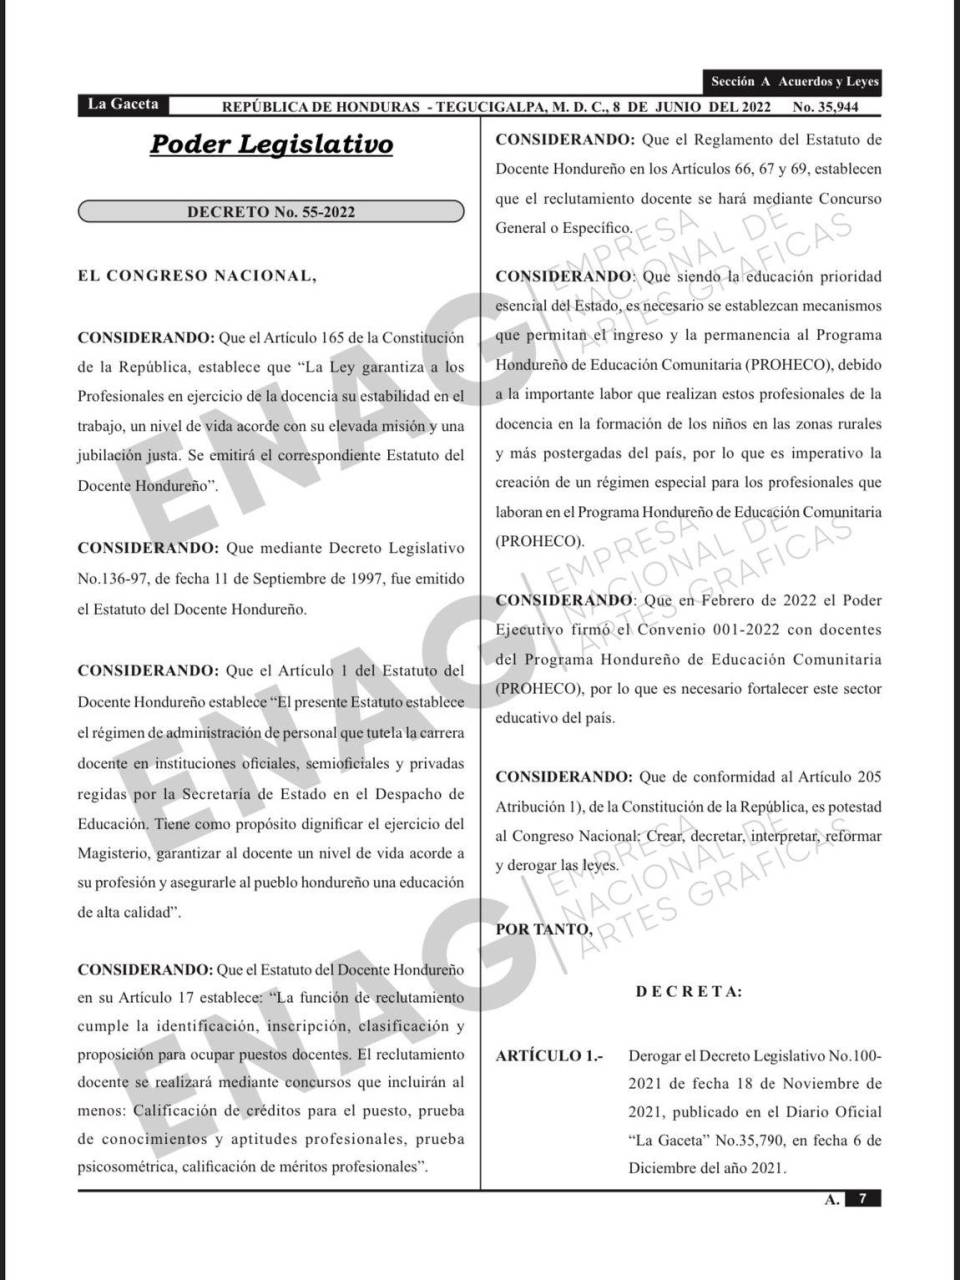 Publican en La Gaceta la derogación del decreto 100-2021